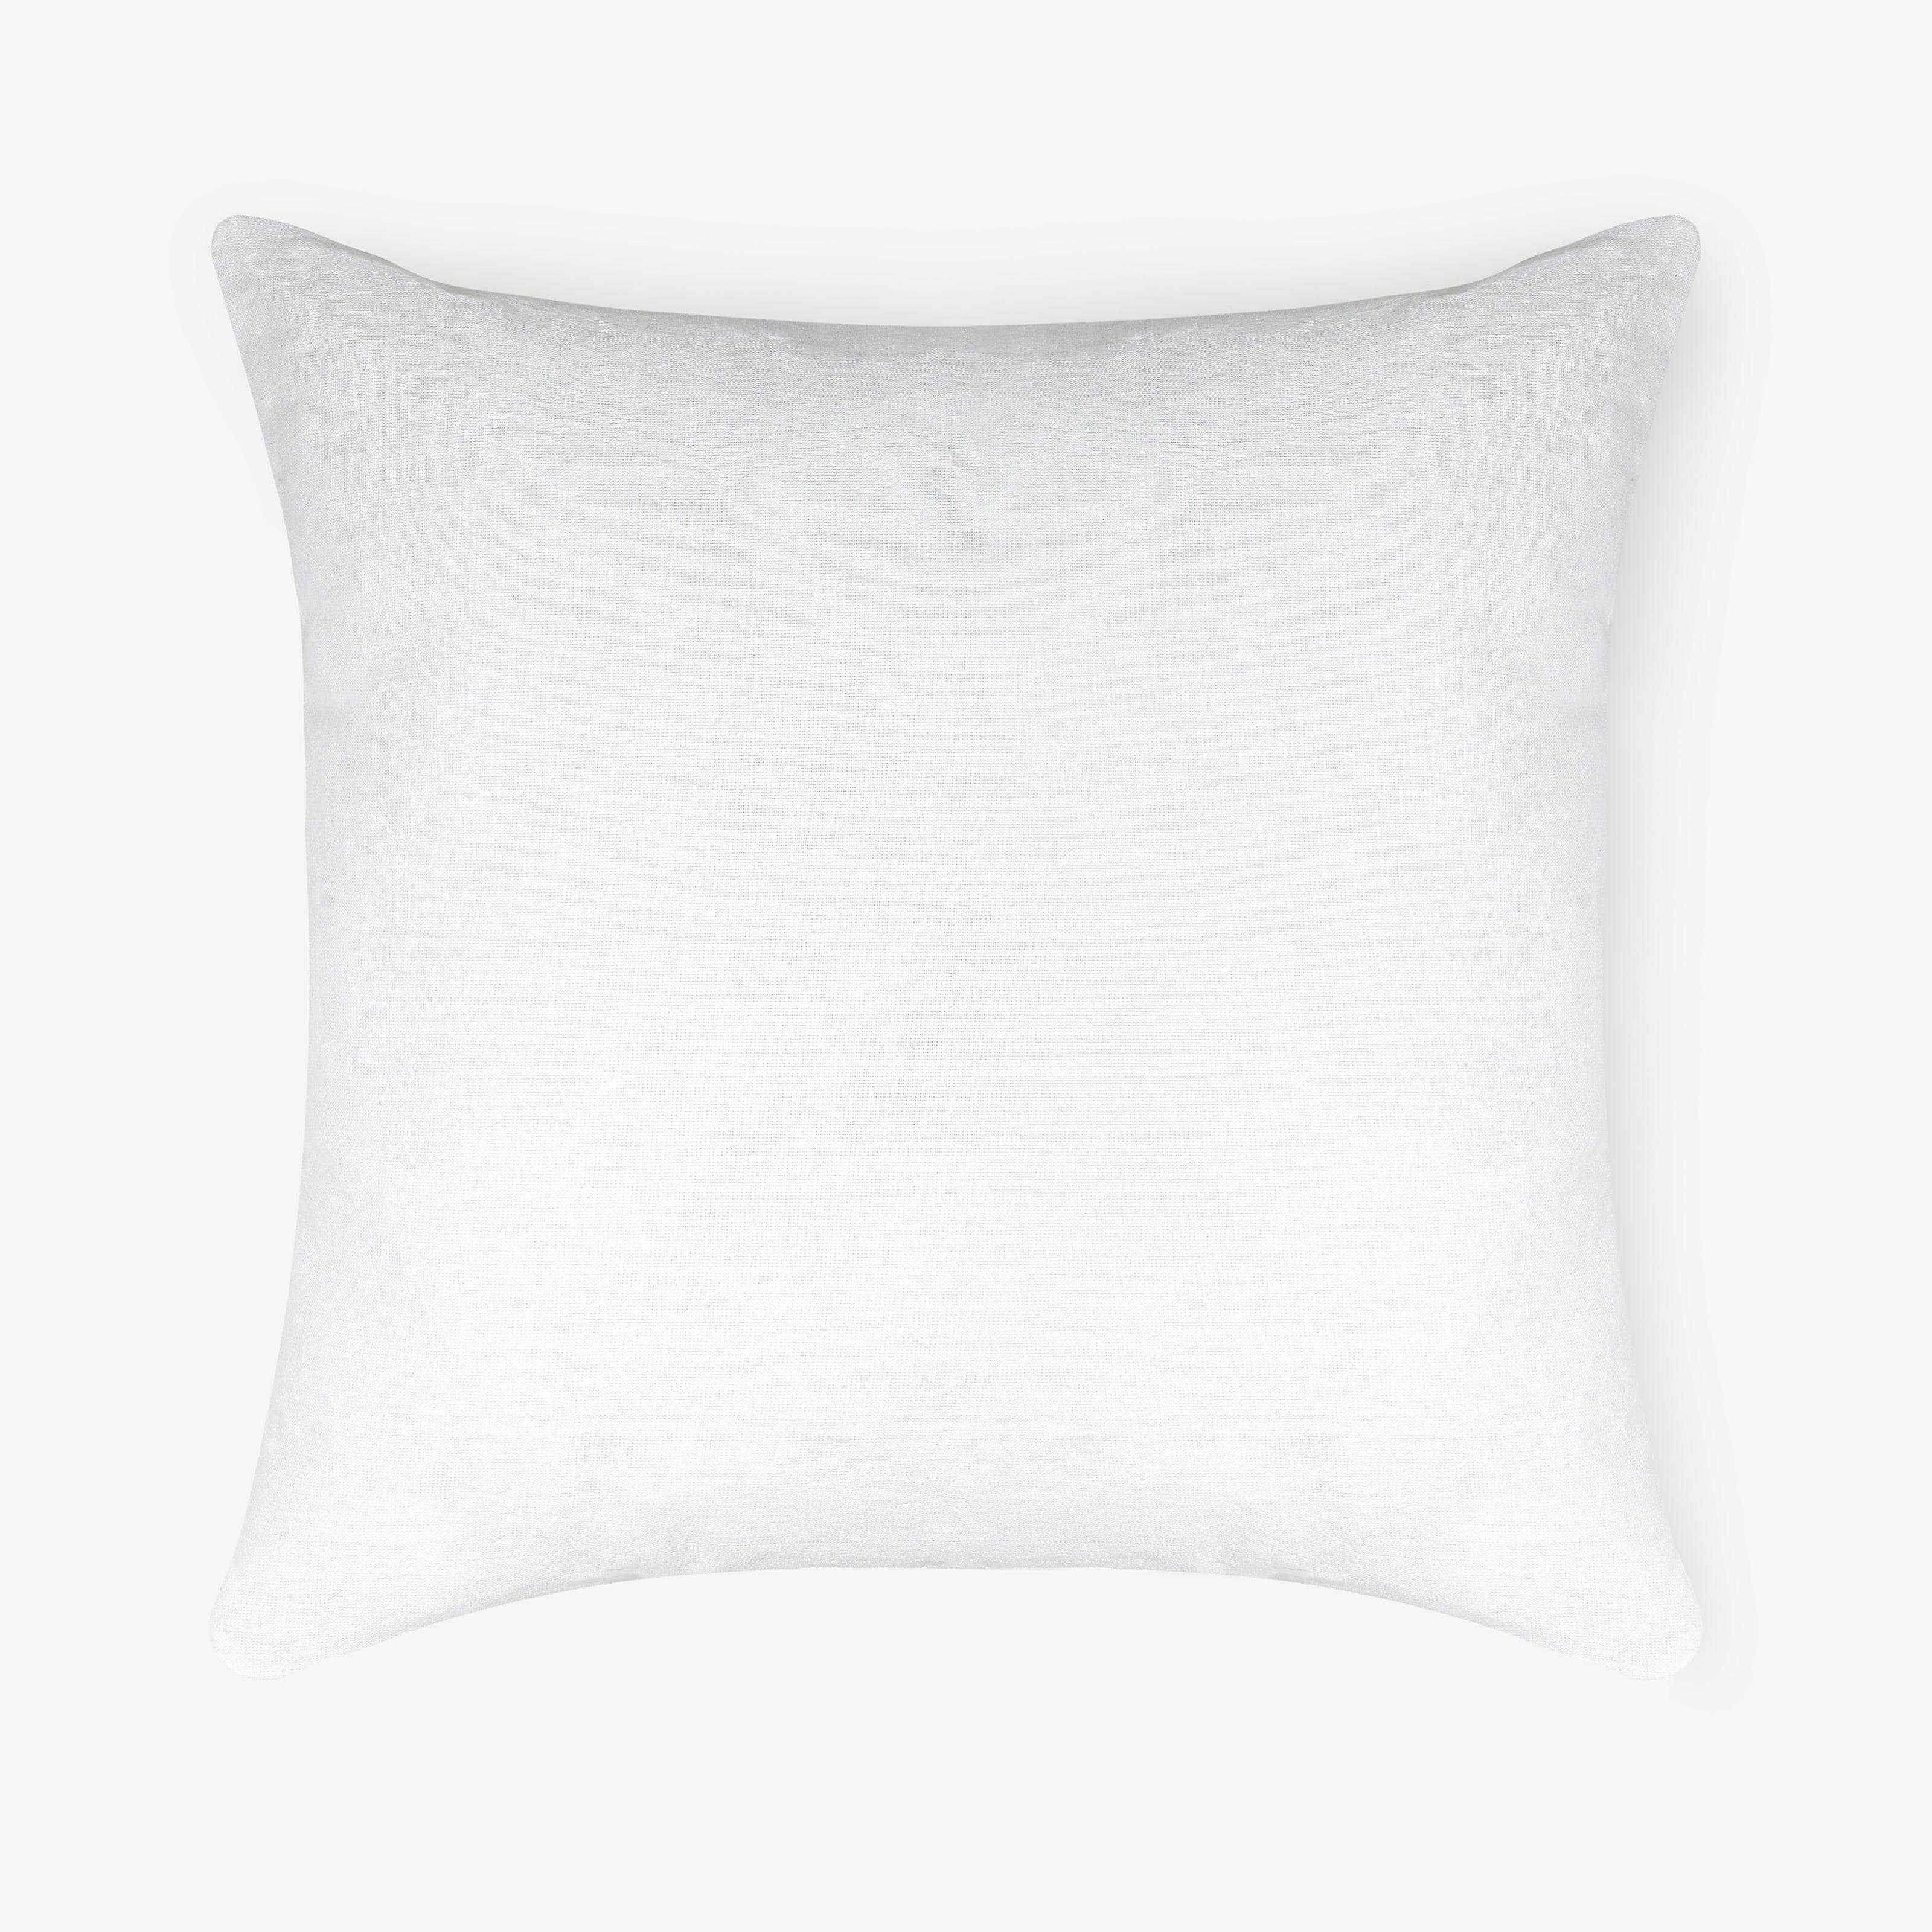 Small Square Cushion Pad White, 40x40 cm 1